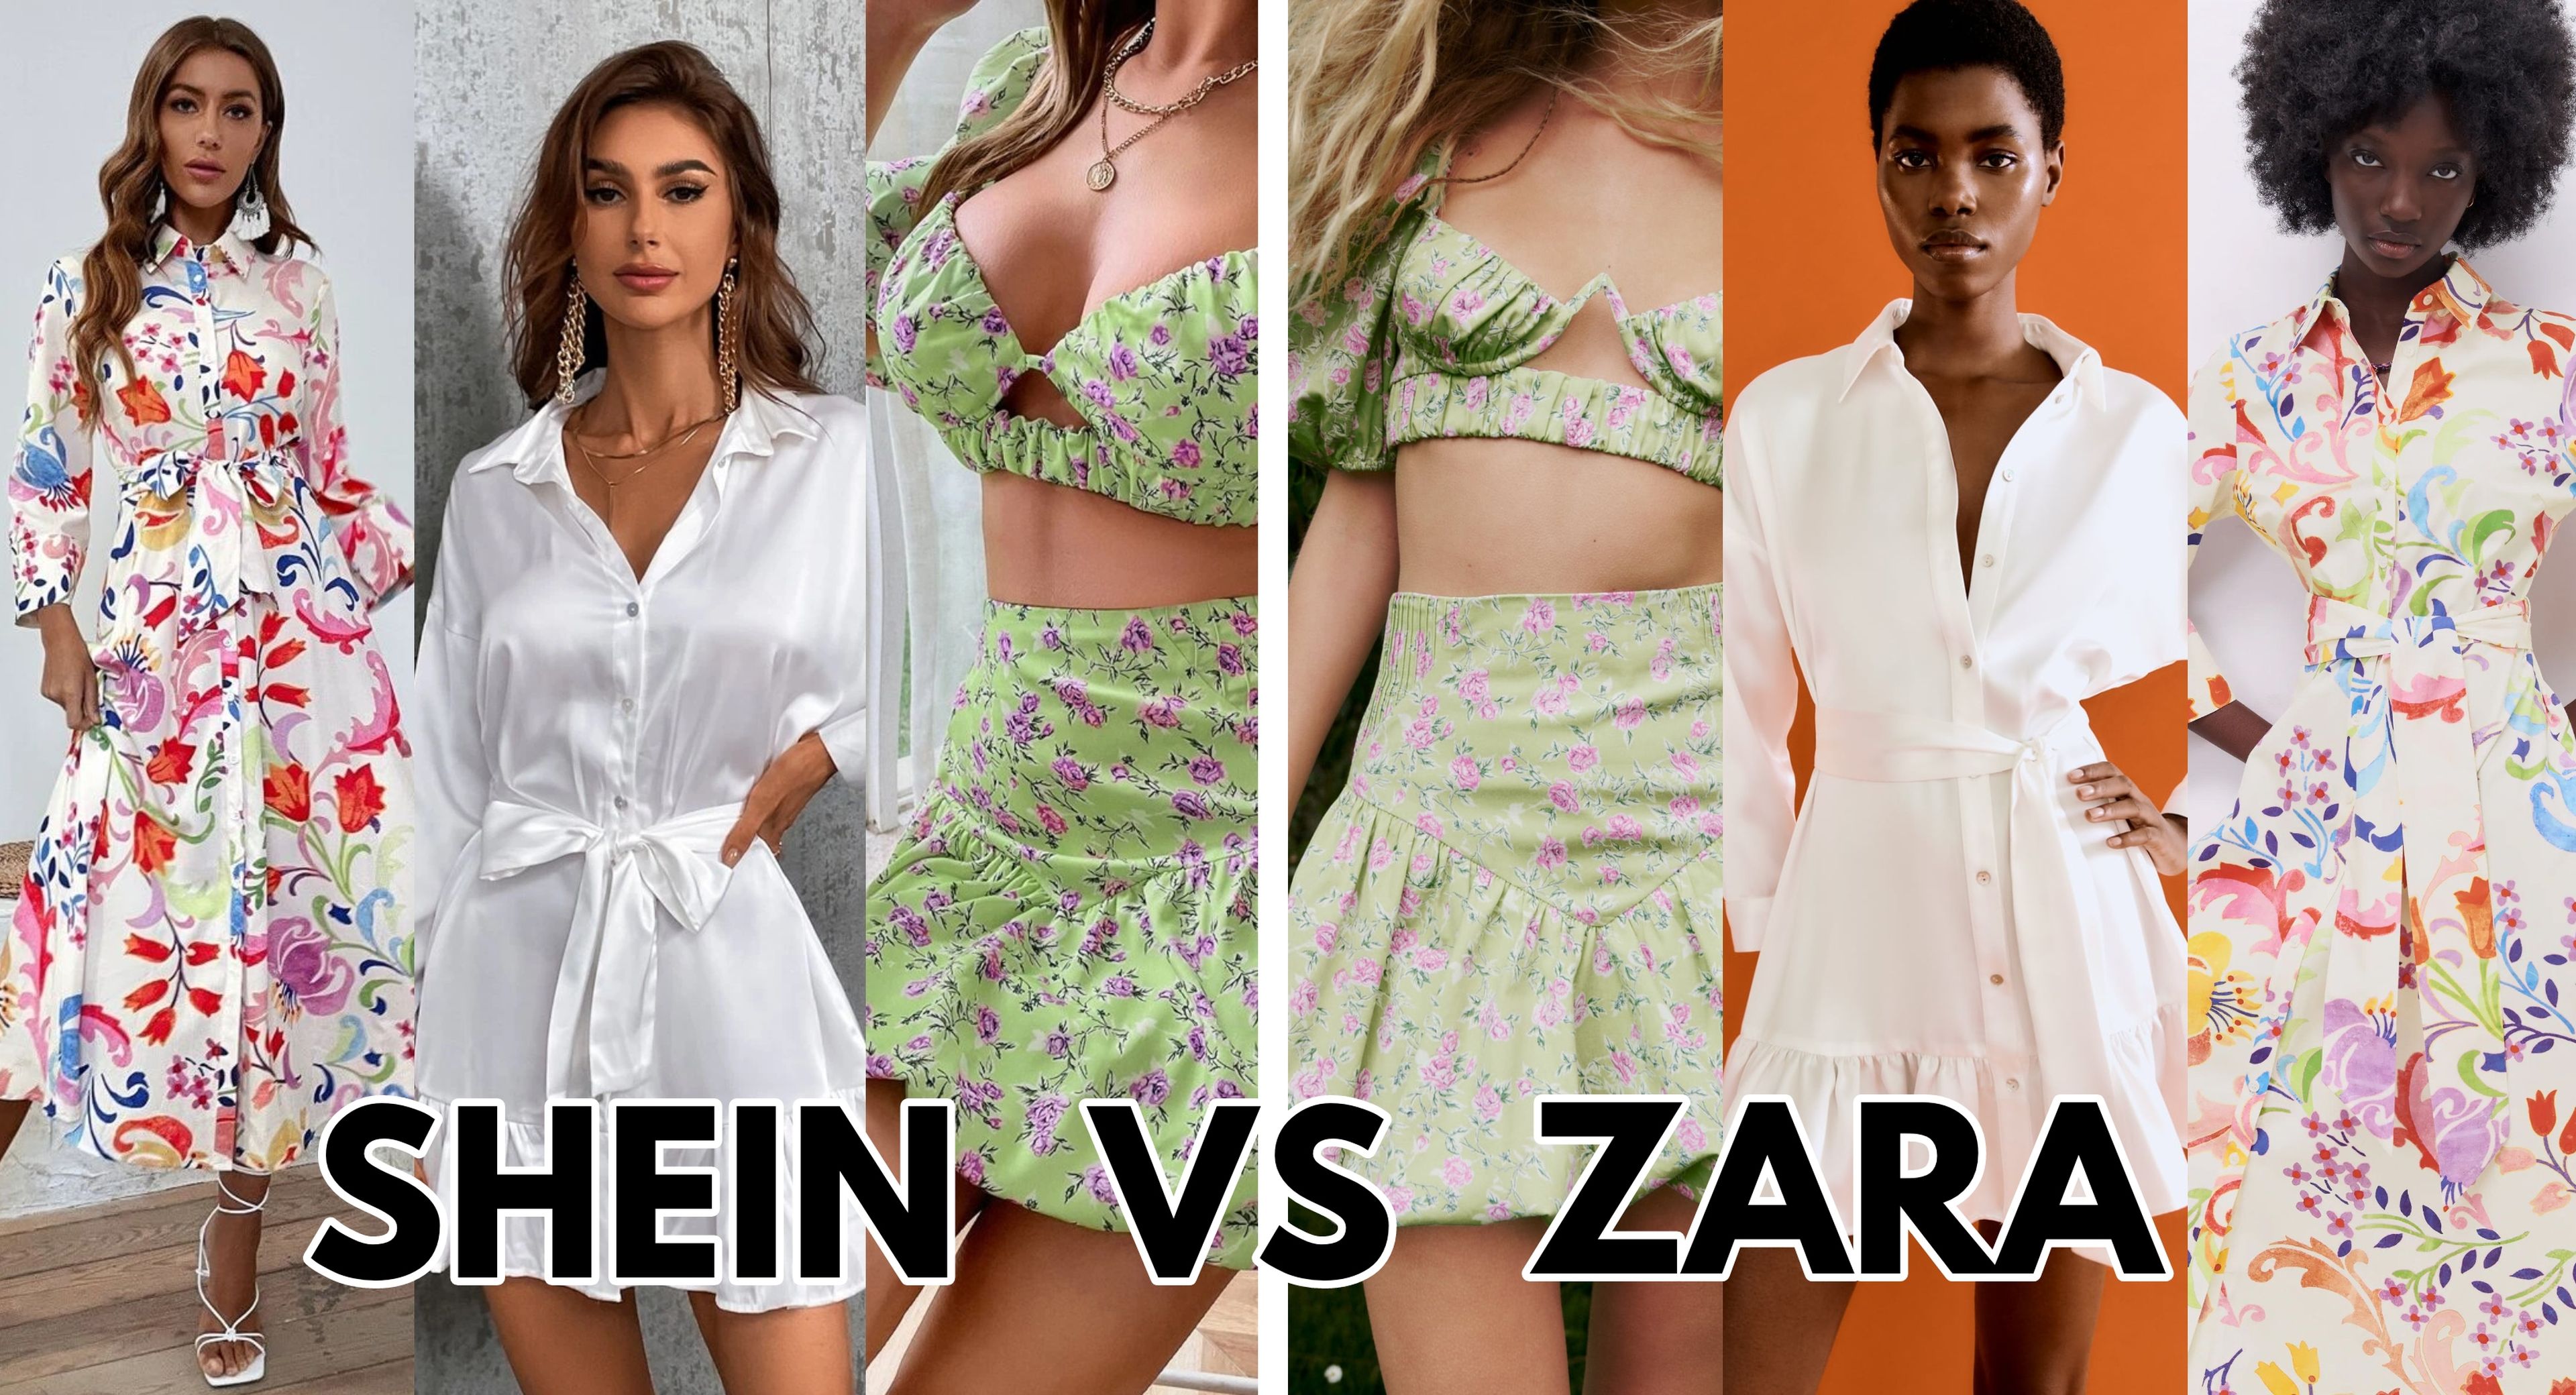 Sabemos cómo descubrir los productos de Zara que estarán de